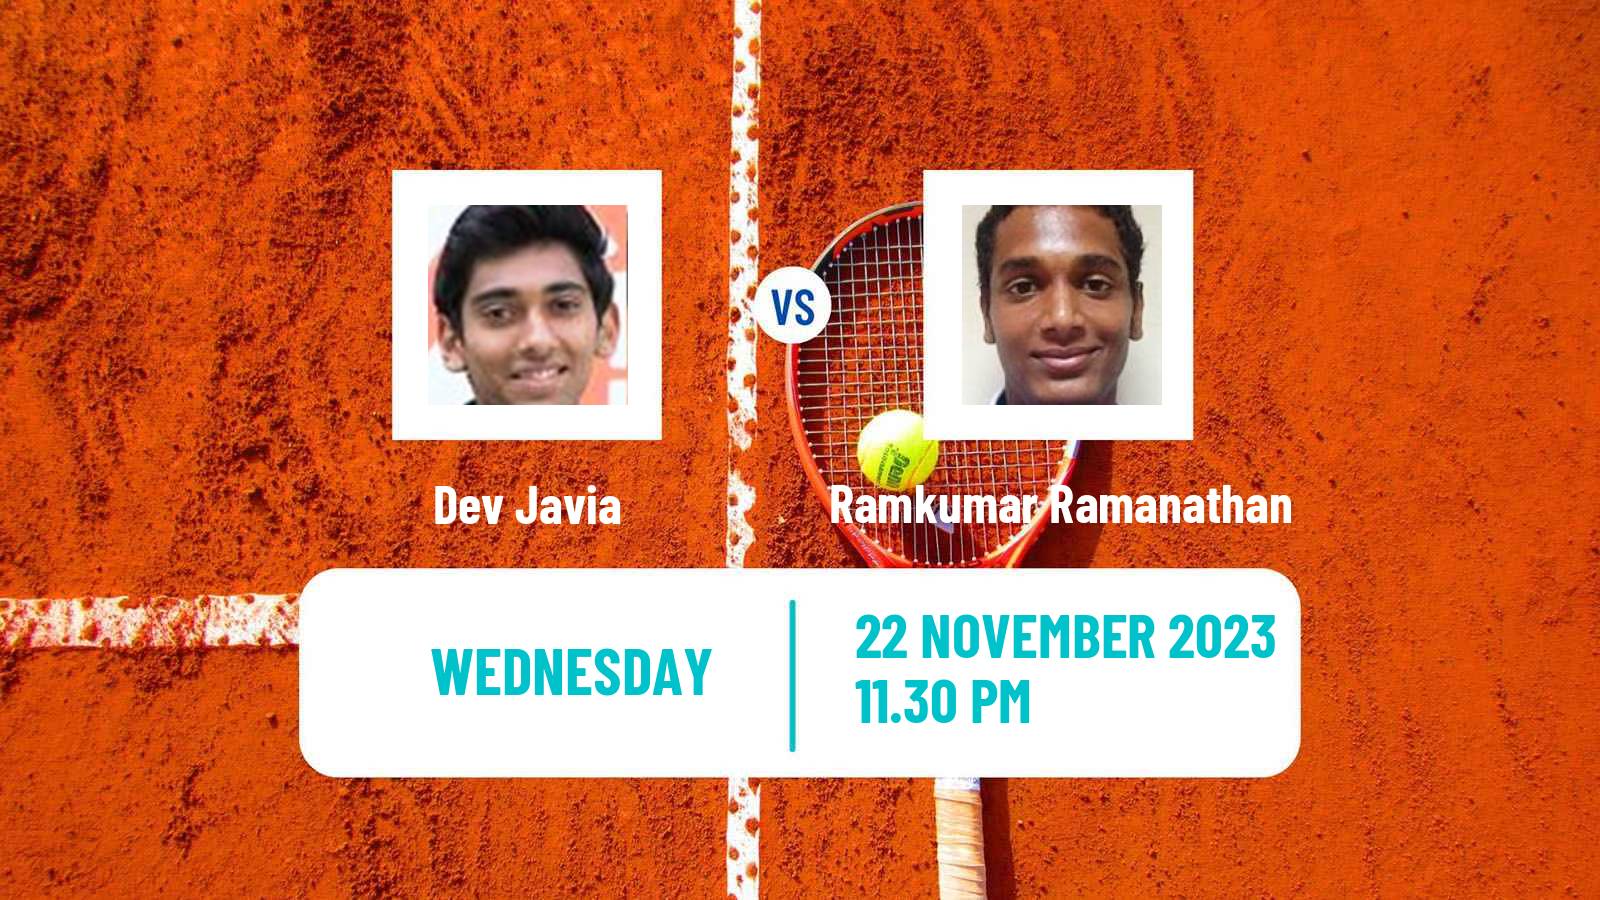 Tennis ITF M25 Mumbai Men Dev Javia - Ramkumar Ramanathan